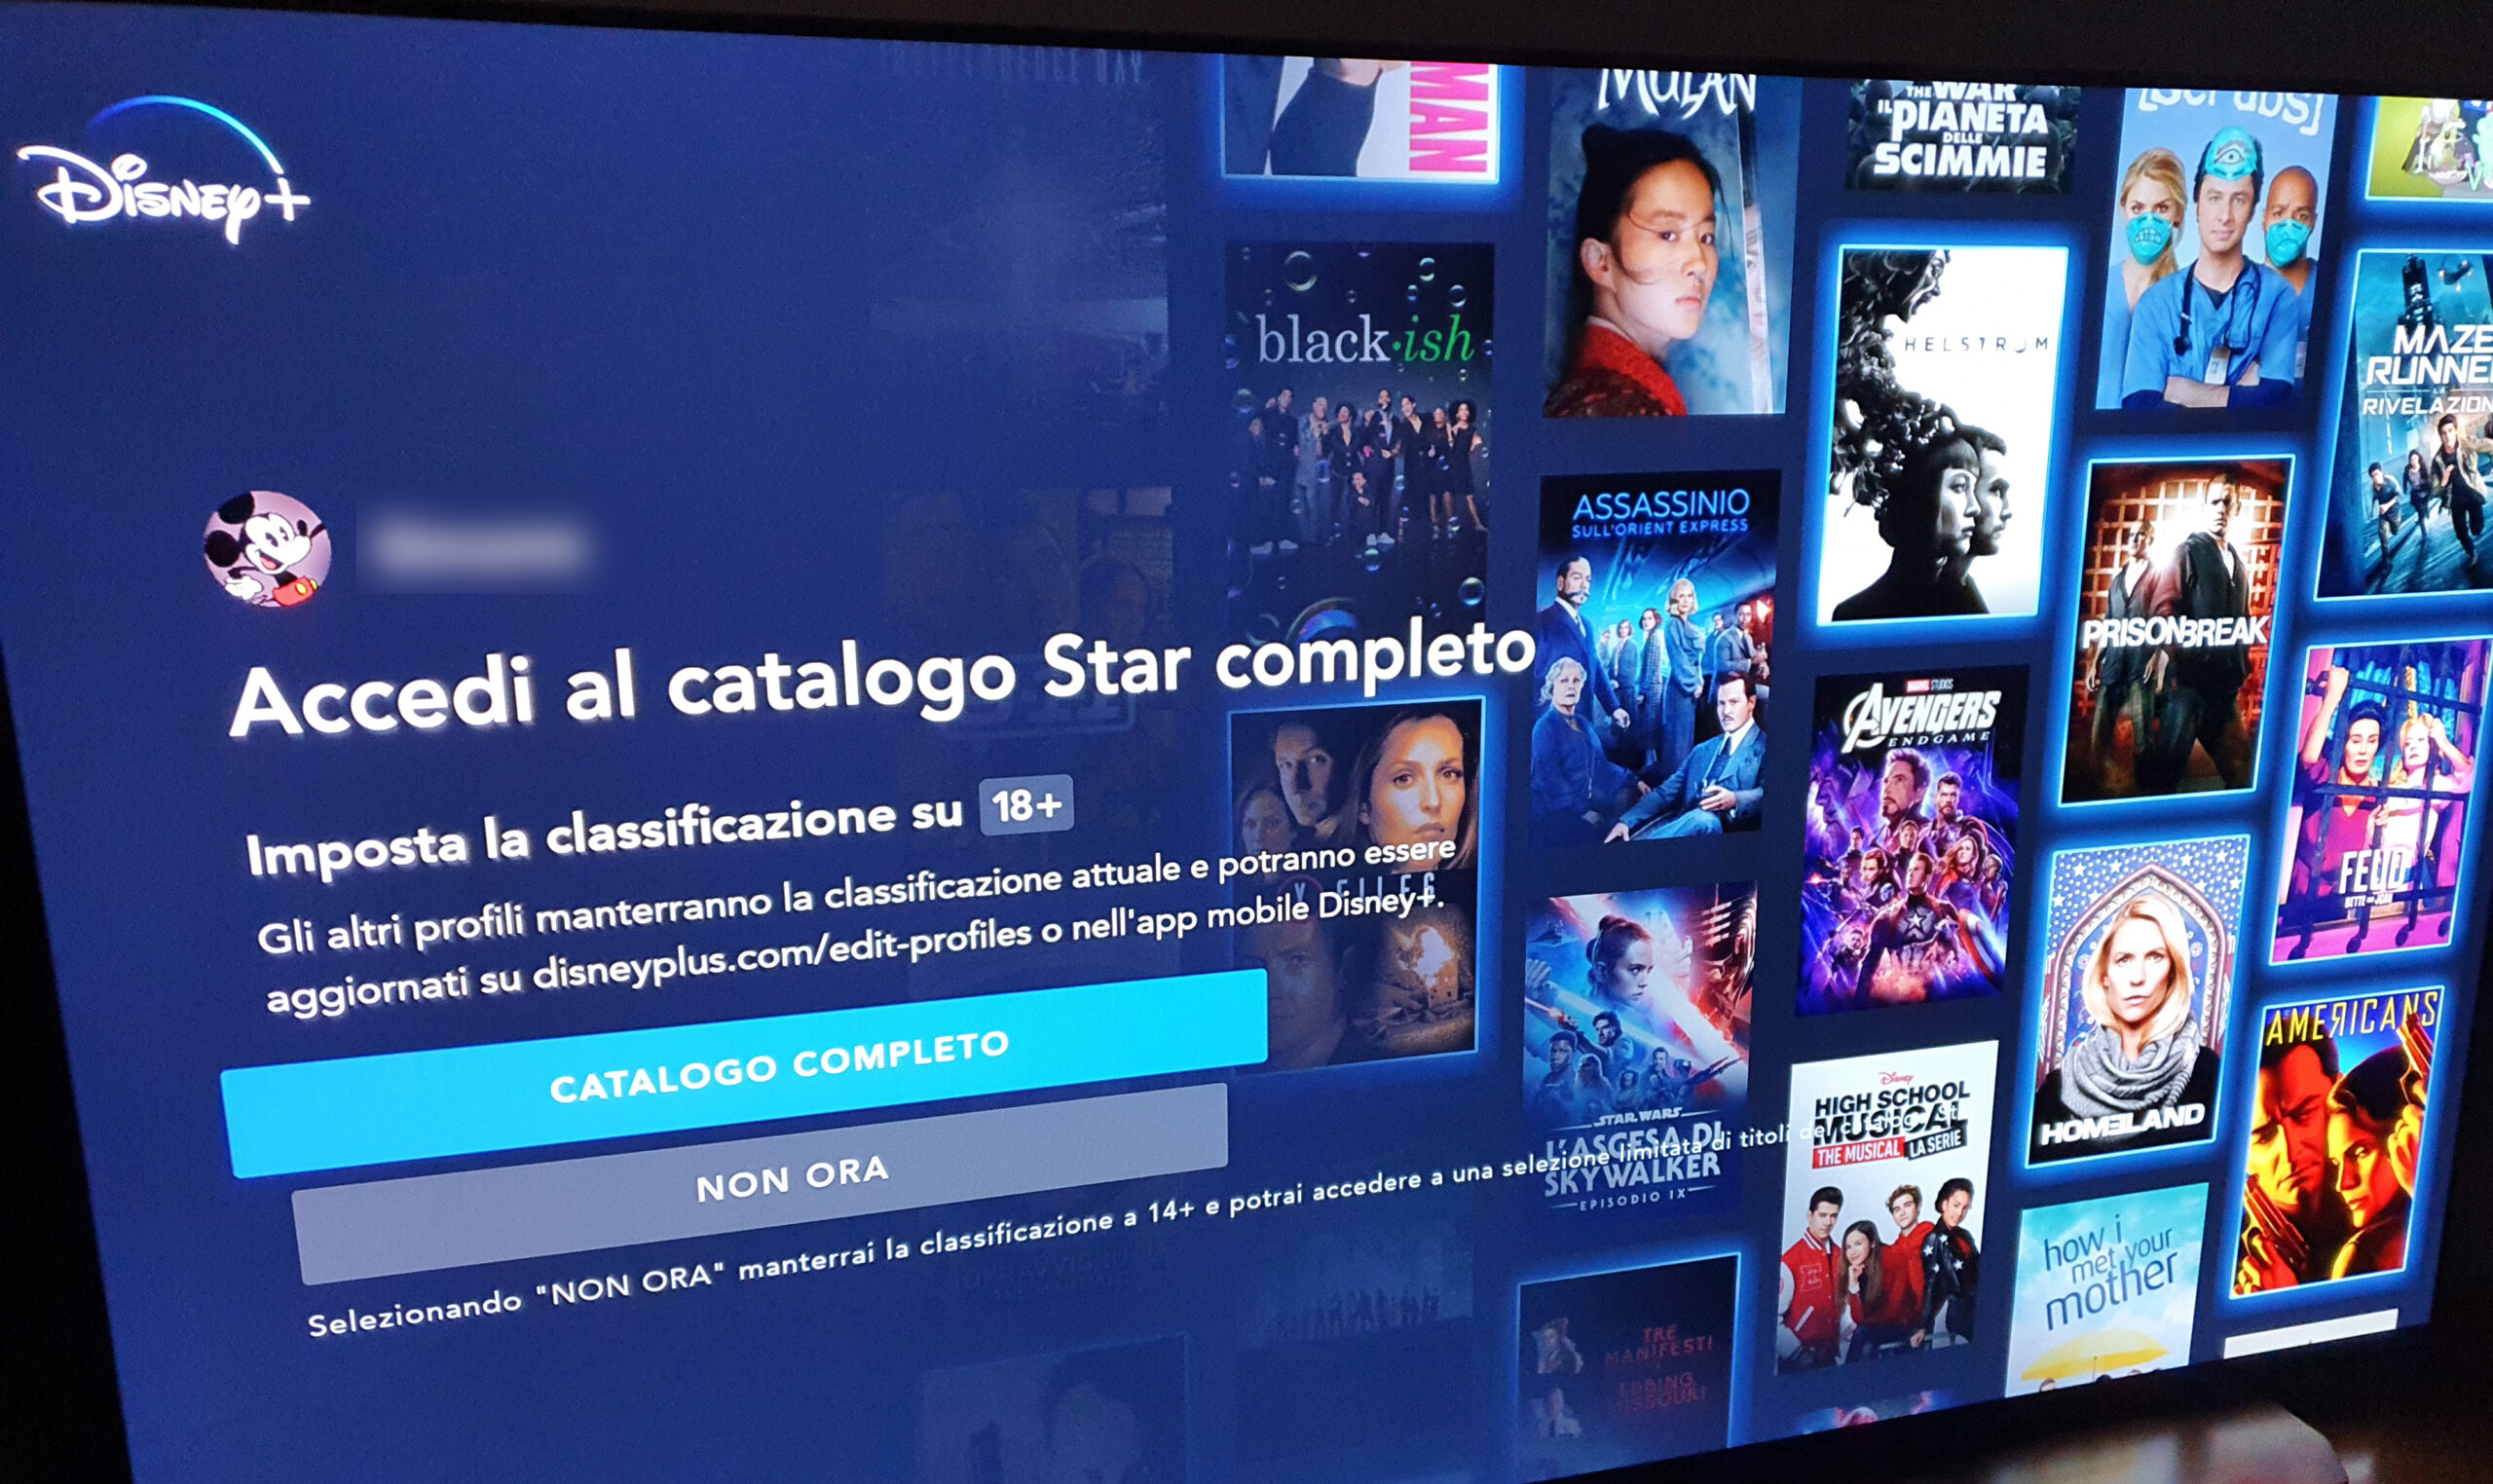 Disney+ richiede l'accesso al catalogo completo di Star